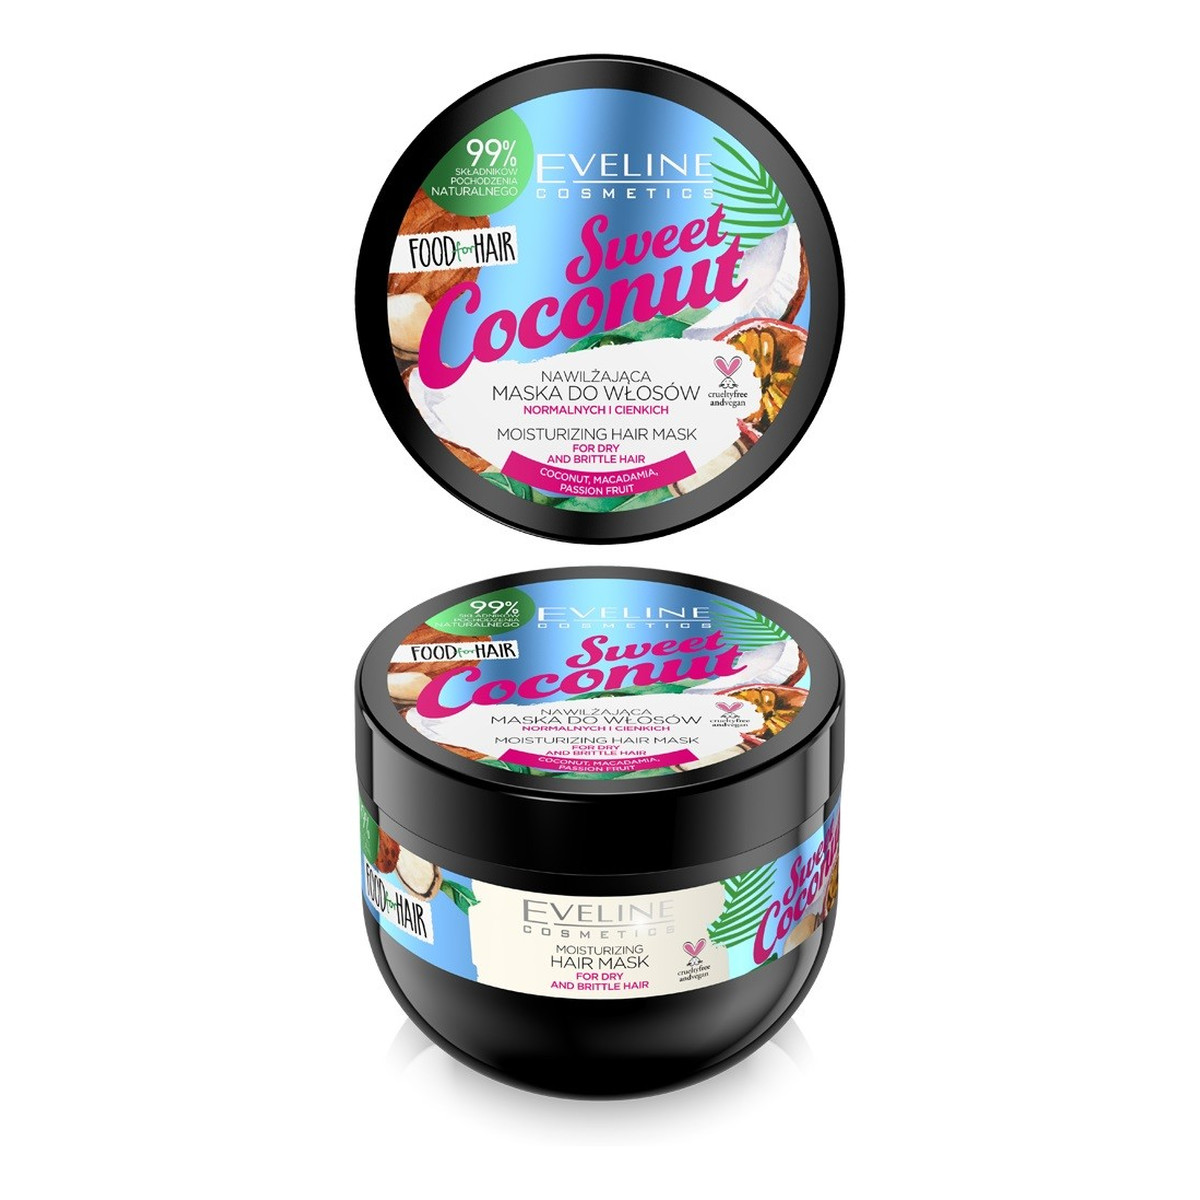 Eveline Food For Hair Sweet Coconut Maska do włosów normalnych i cienkich - nawilżenie i połysk 500ml